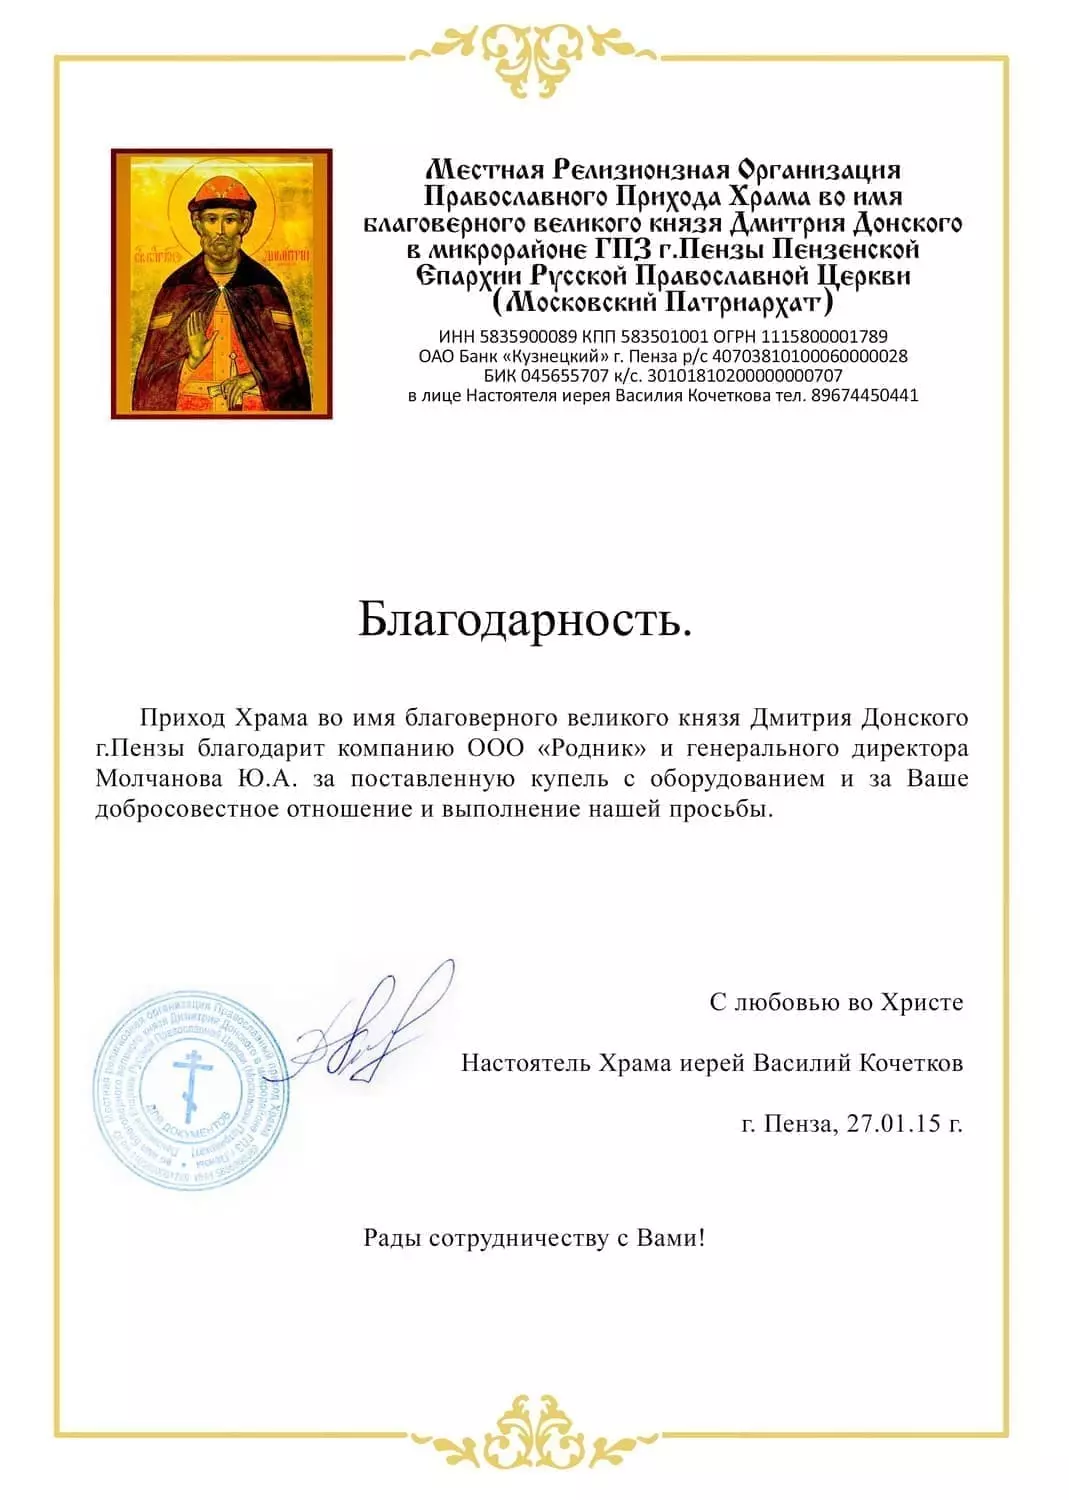 Благодарственное письмо от Храма Дмитрия Донского г. Пенза